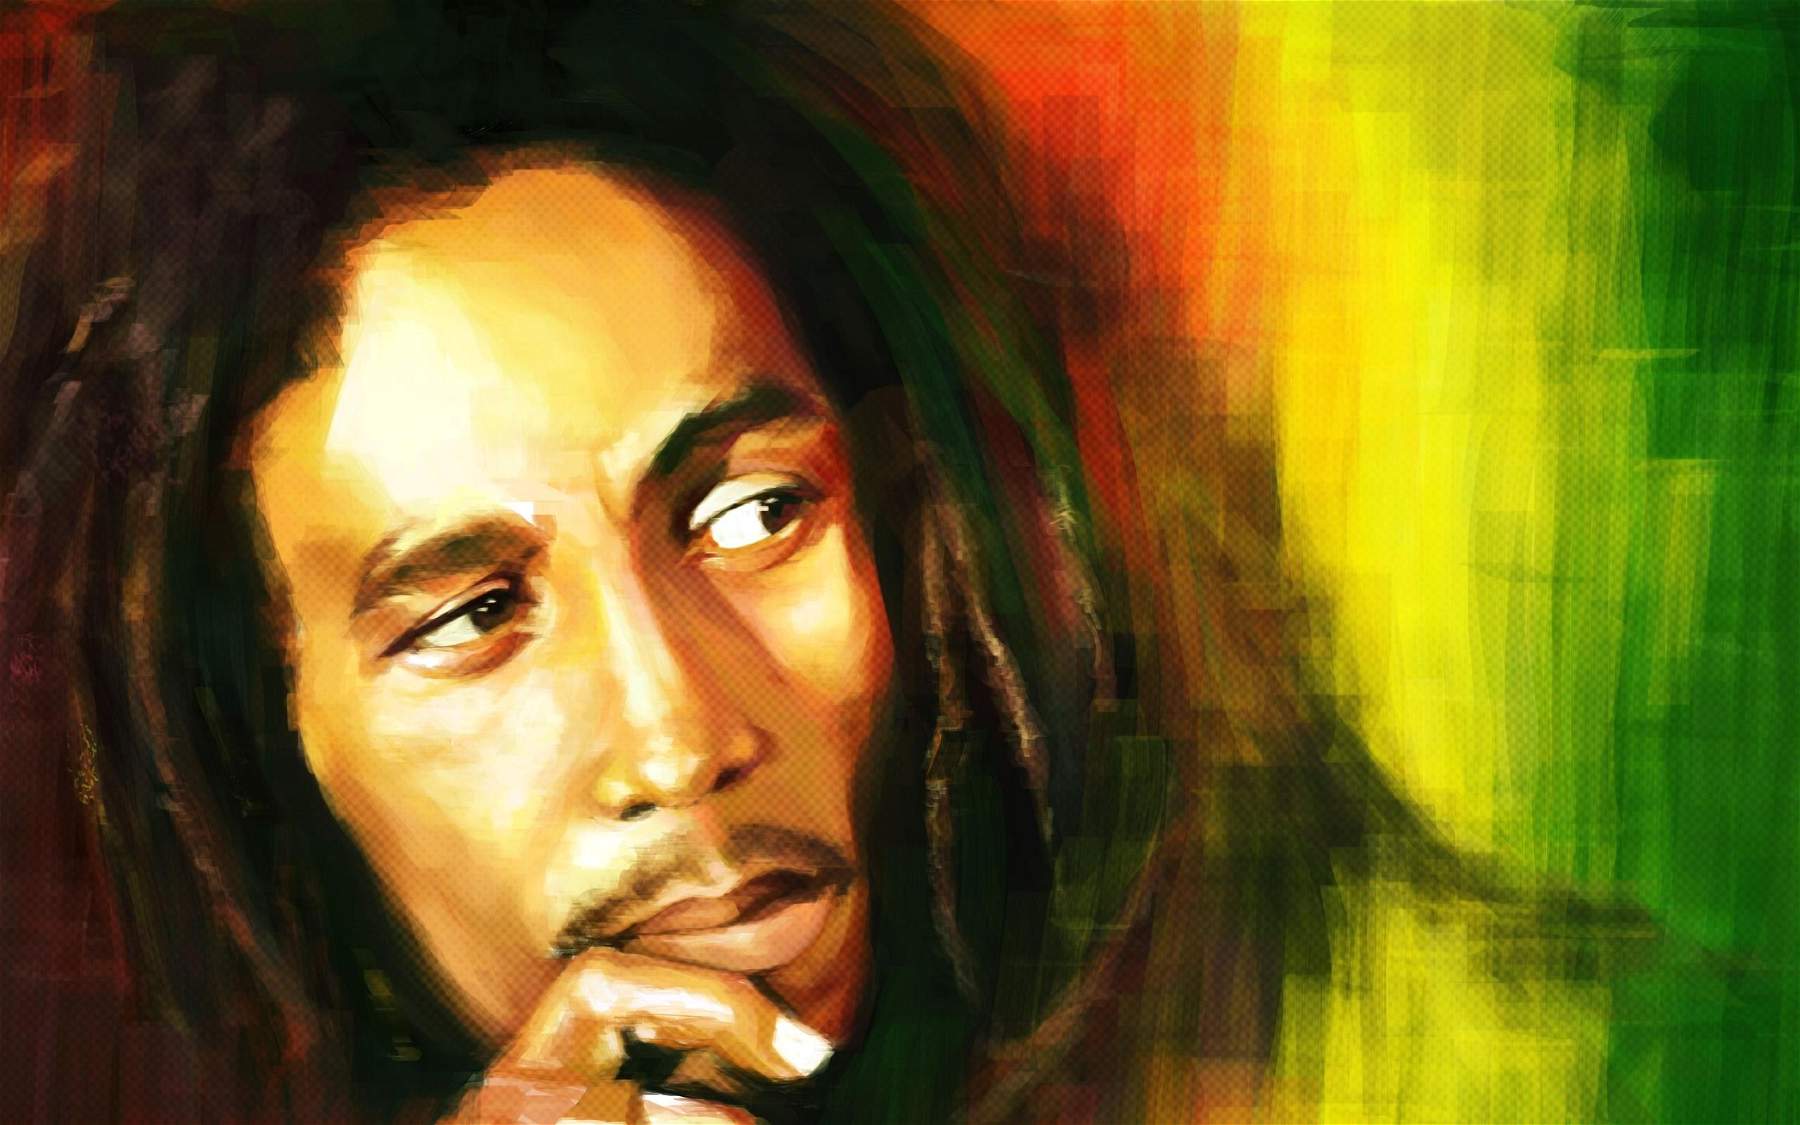 Le reggae est inscrit au patrimoine mondial de l'humanité. C'est la première fois qu'un genre musical de diffusion mondiale est inscrit au patrimoine mondial de l'humanité.